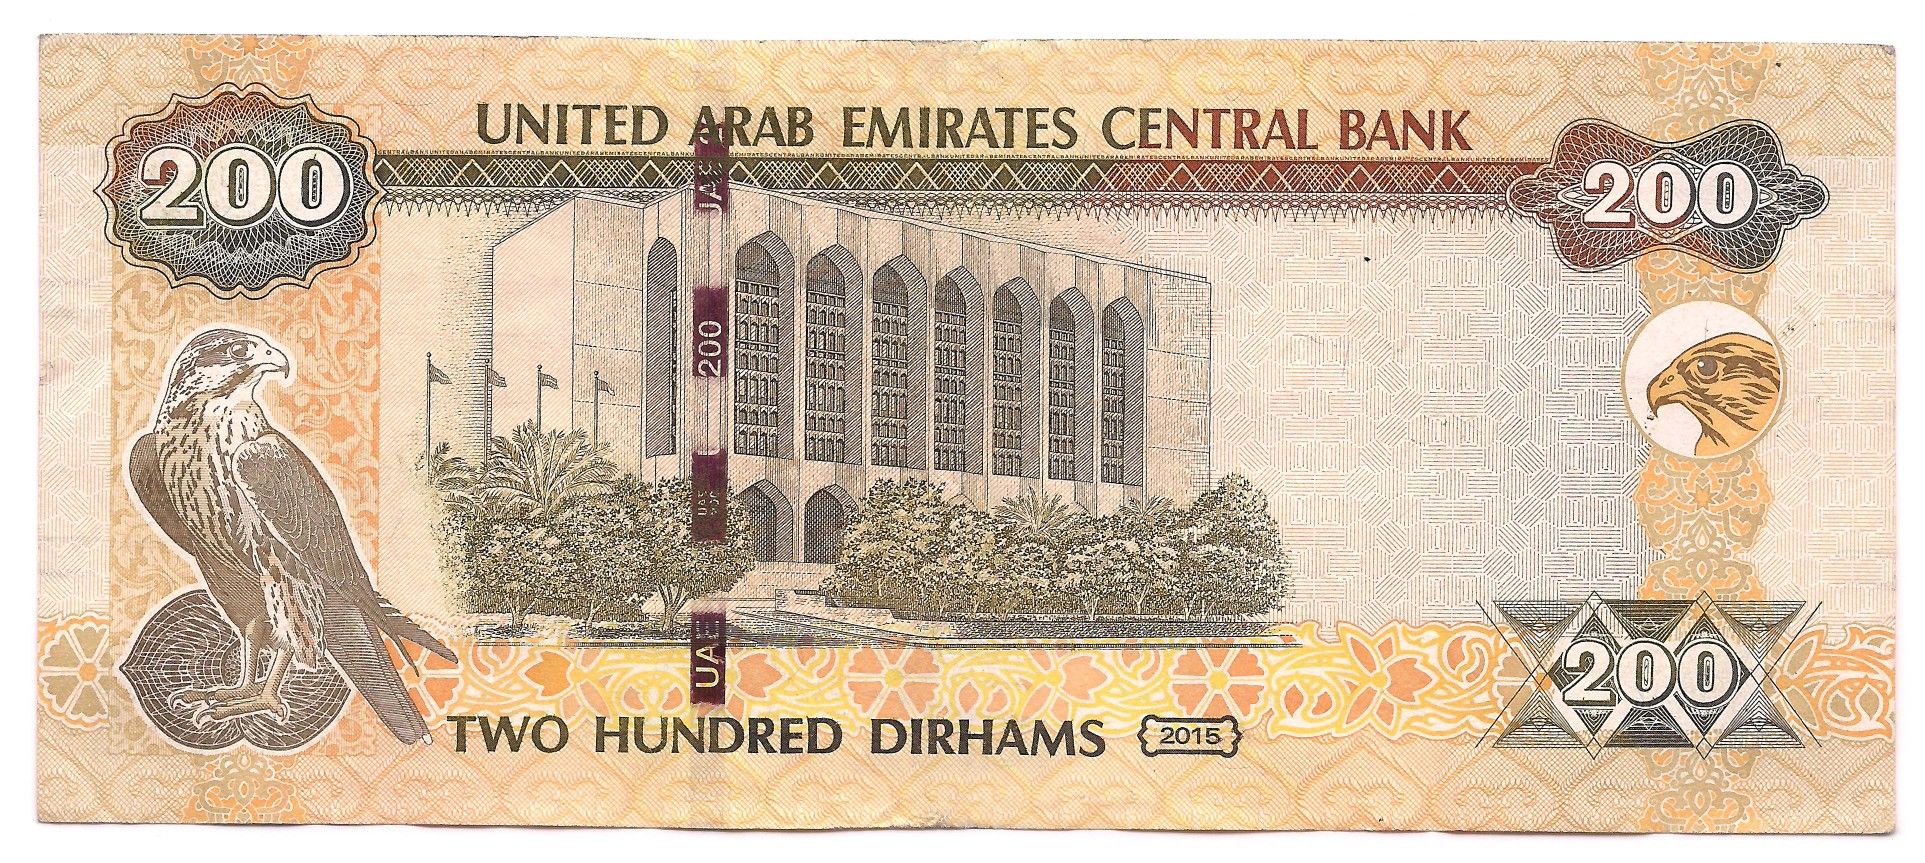 100 дирхам сколько в рублях. Банкноты United arab Emirates,2008, 50 dirhams. 200 Дирхам купюра. Банкнота арабские эмираты 200 дирхам. Банкнота 100 дирхам ОАЭ.